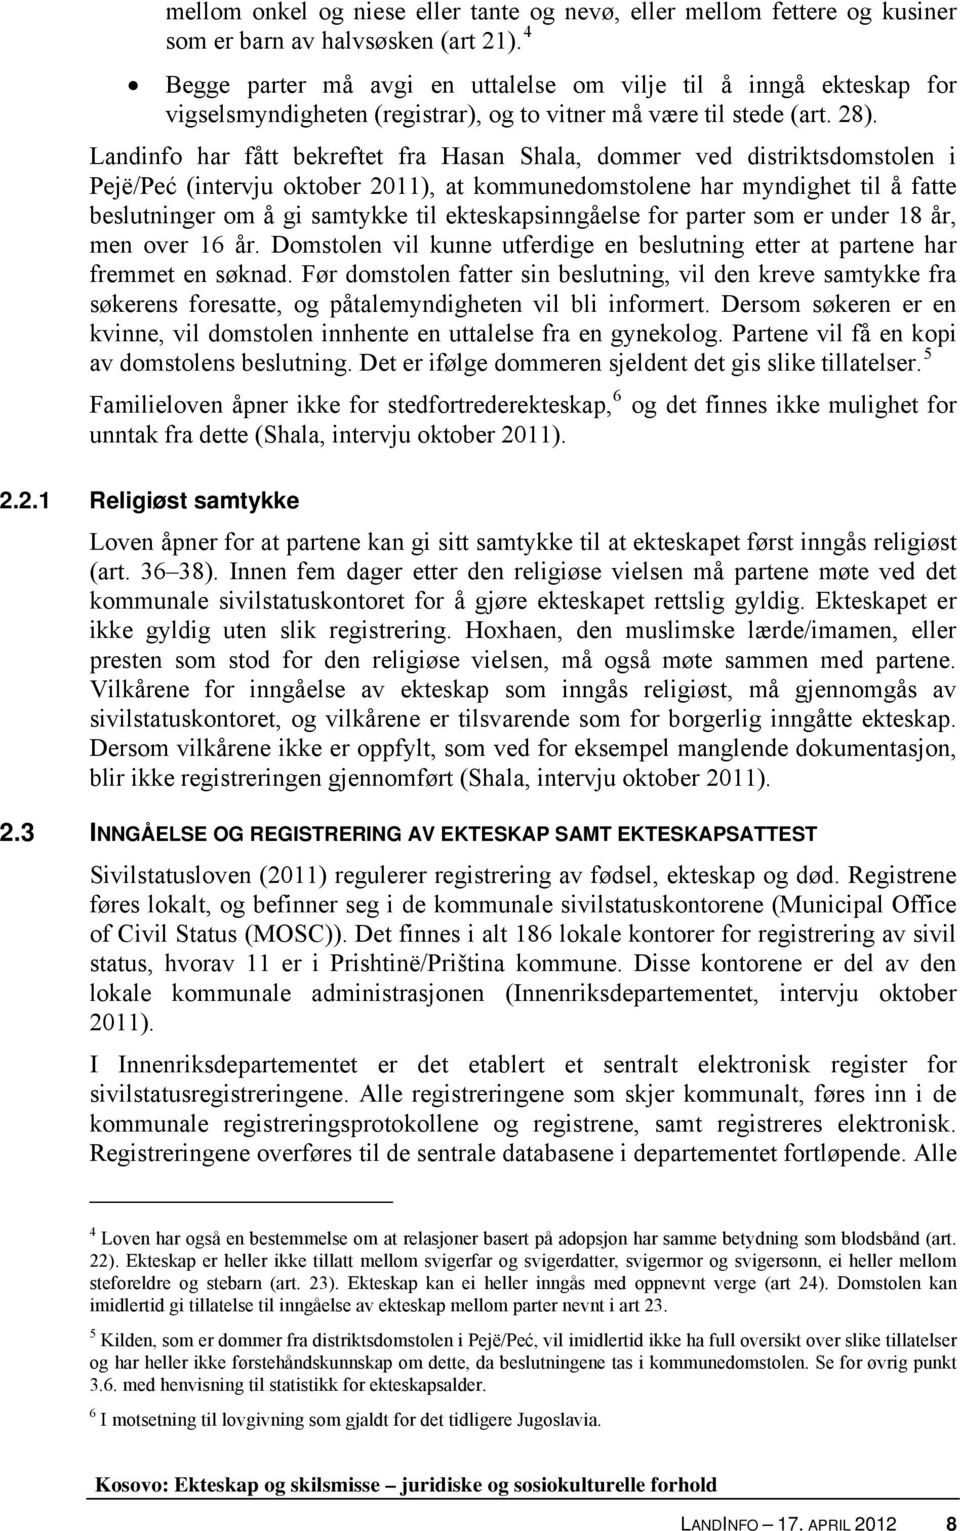 Landinfo har fått bekreftet fra Hasan Shala, dommer ved distriktsdomstolen i Pejë/Peć (intervju oktober 2011), at kommunedomstolene har myndighet til å fatte beslutninger om å gi samtykke til